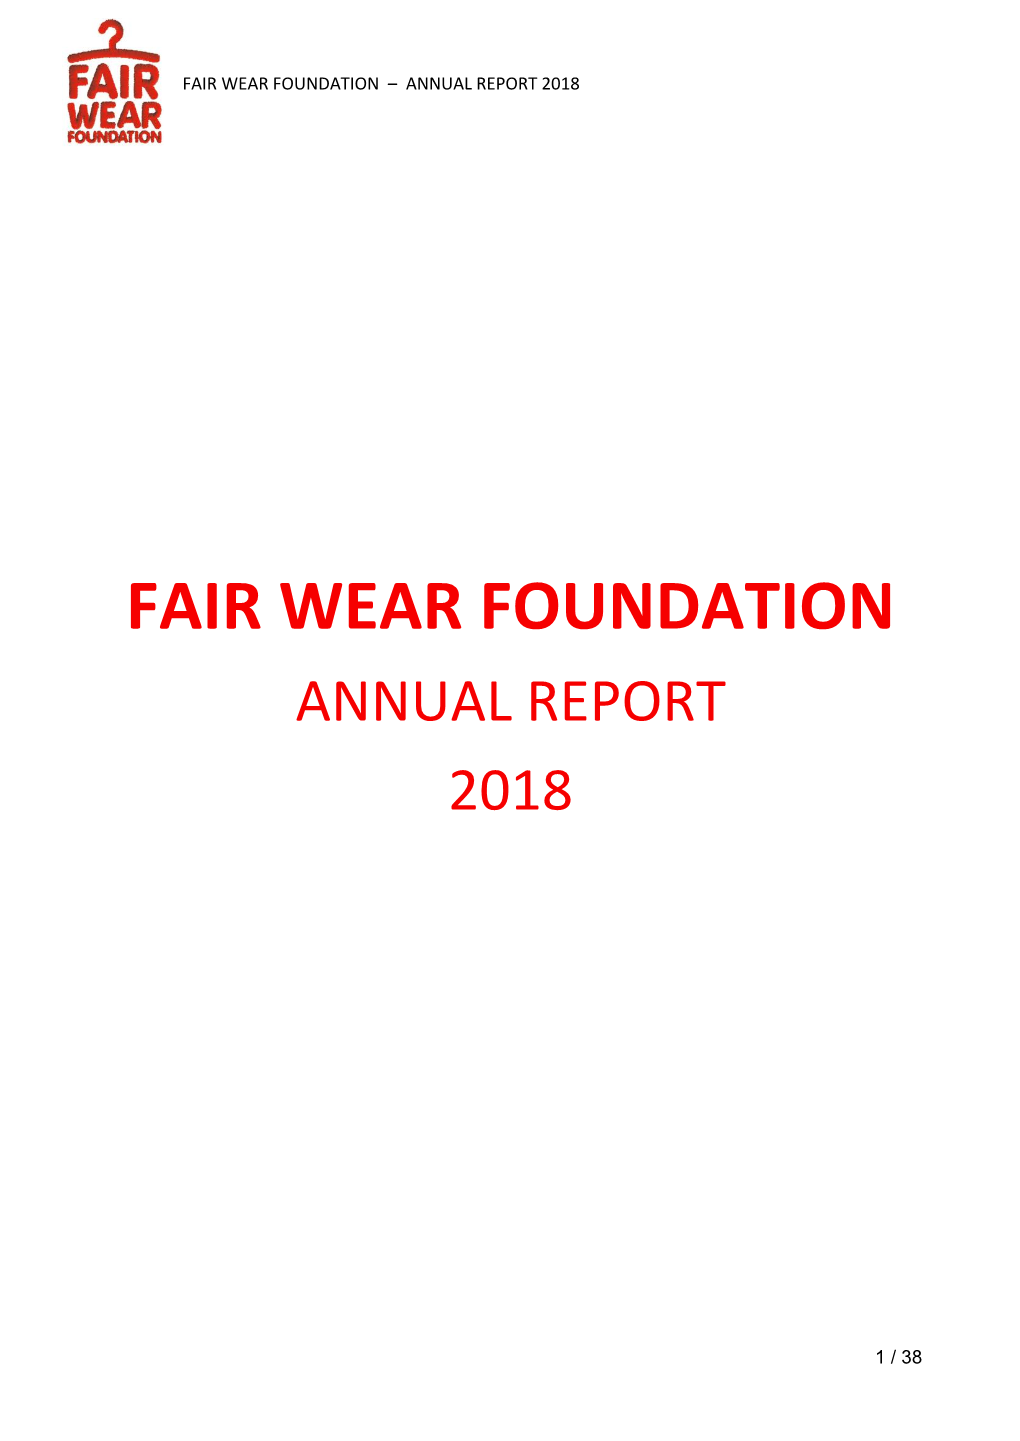 Fair Wear Annual Report 2018